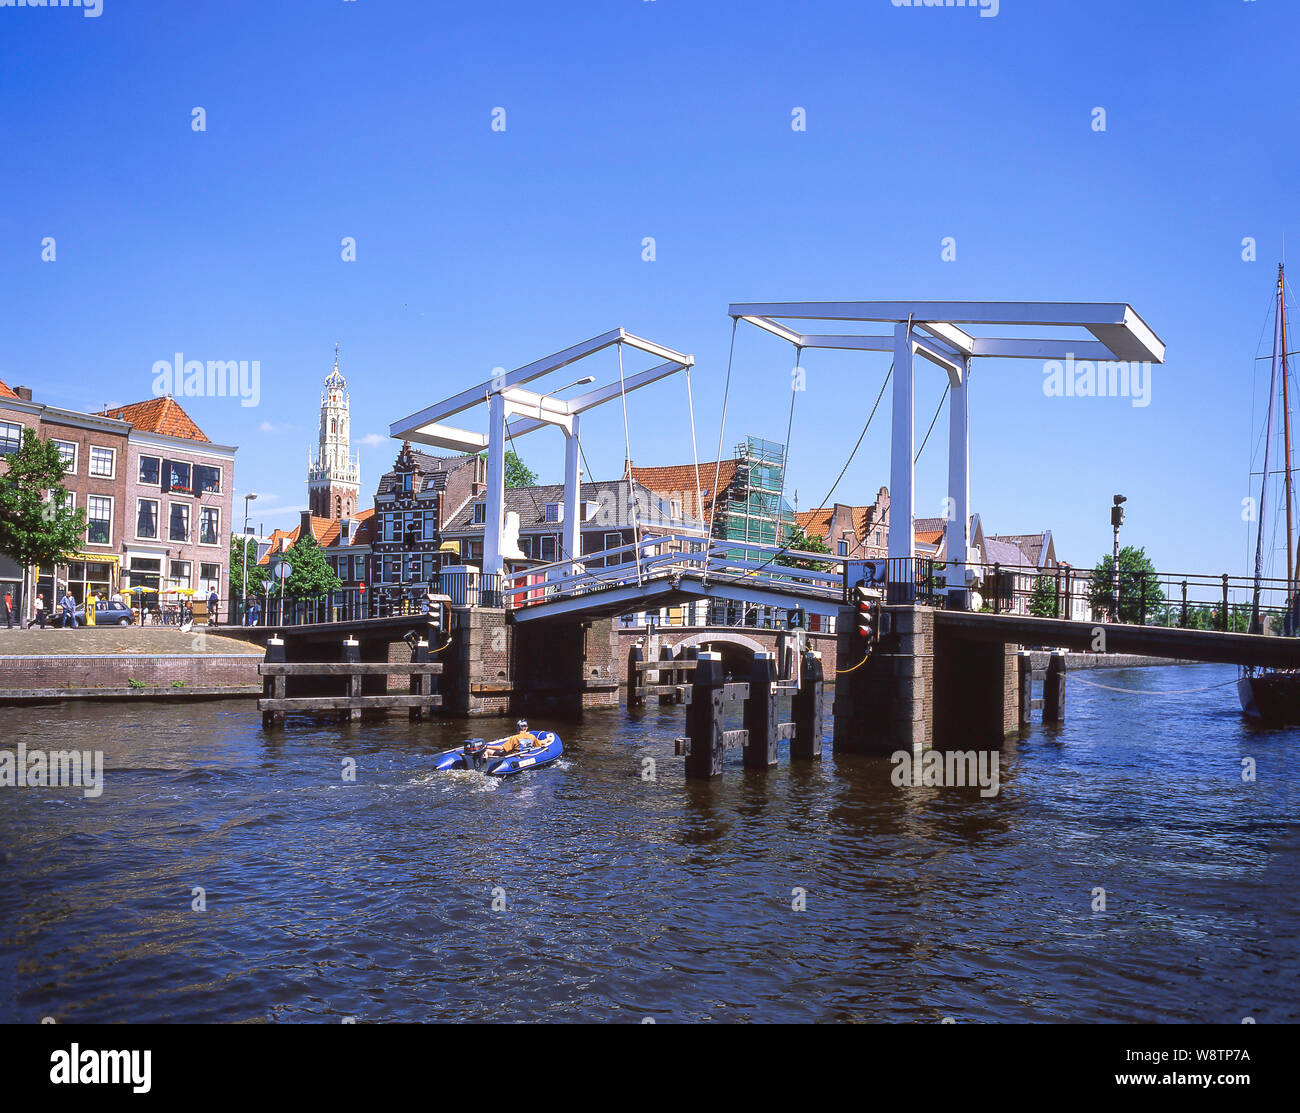 Le Gravestenen pont-levis en bois sur la rivière Spaarne, Haarlem, Noord-Holland, Royaume des Pays-Bas Banque D'Images